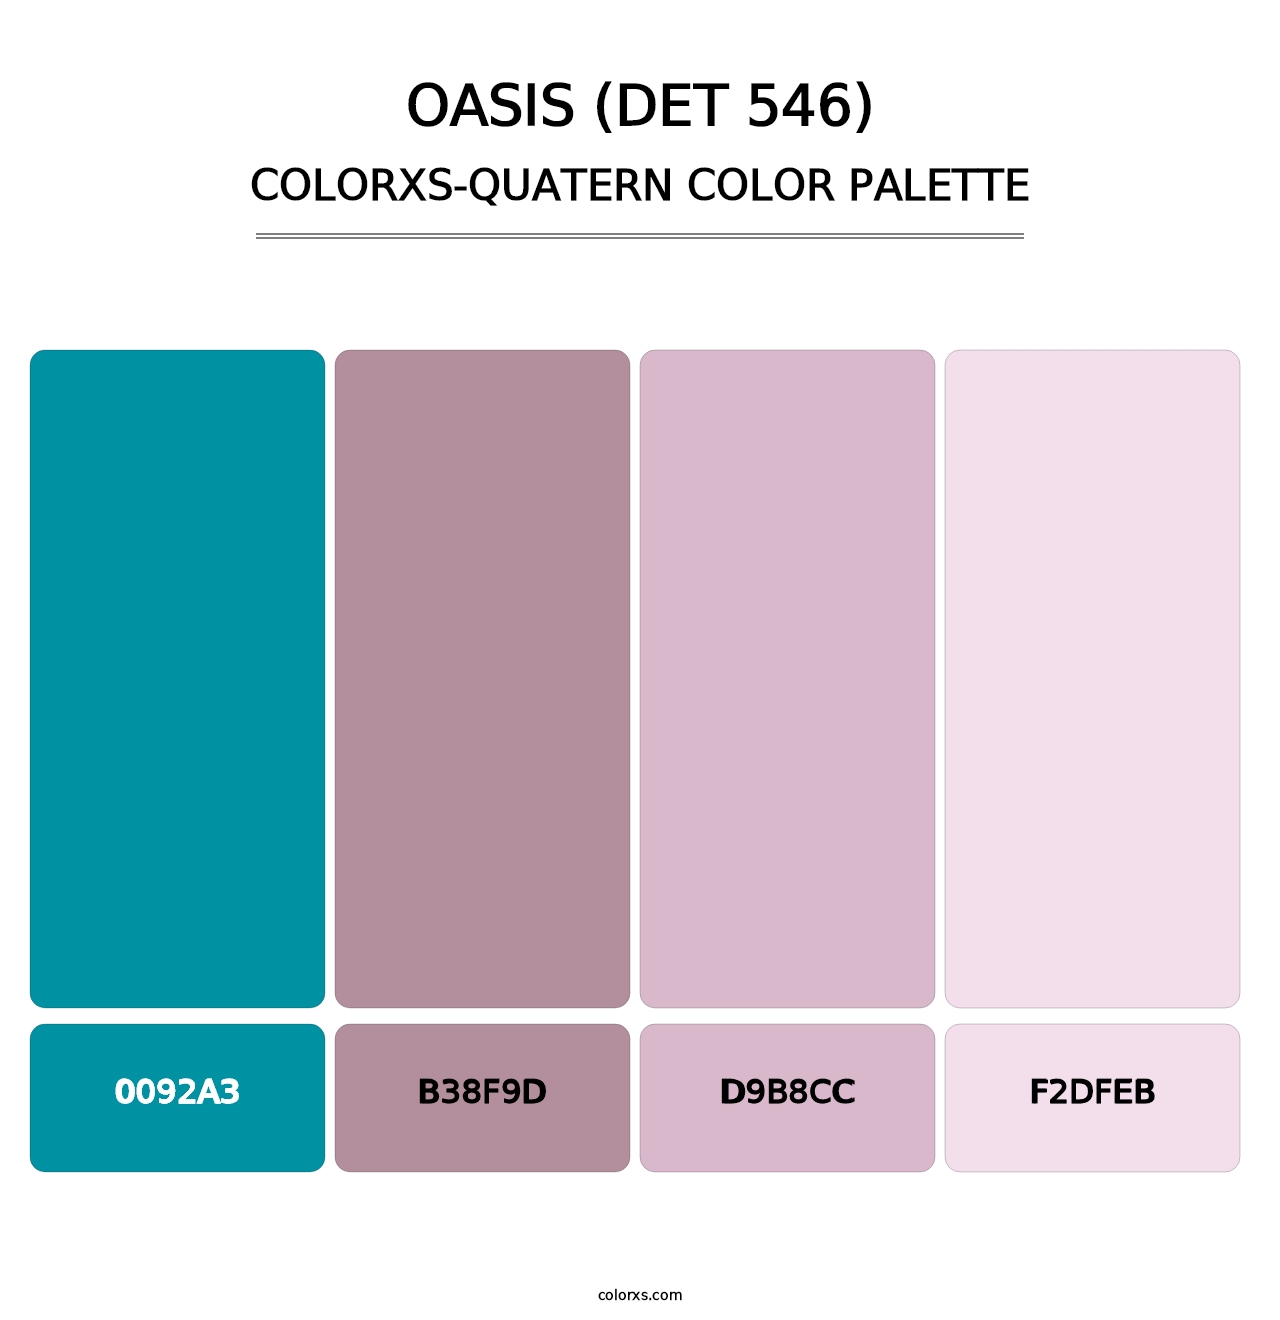 Oasis (DET 546) - Colorxs Quatern Palette